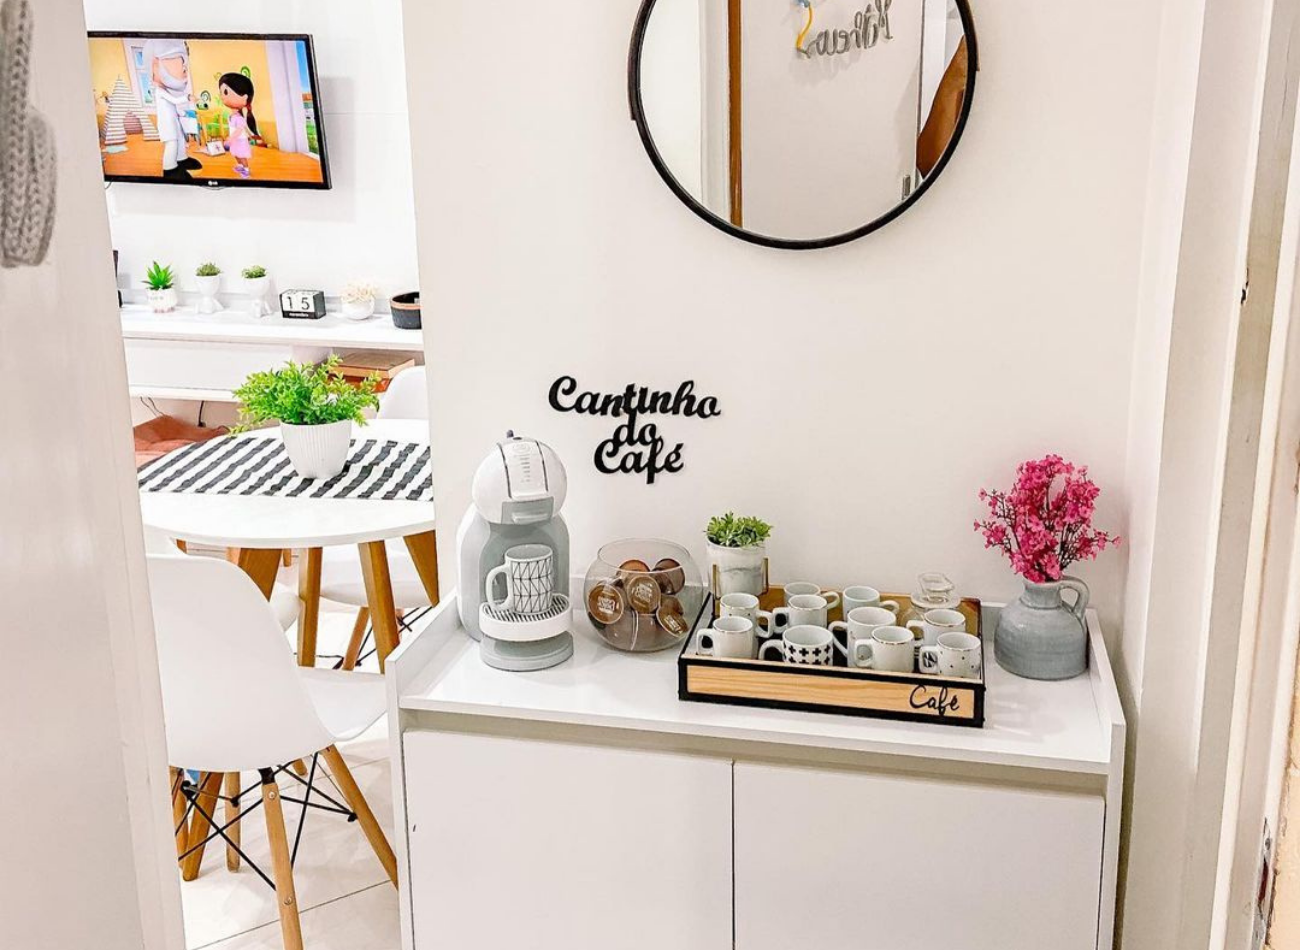 Quer aprender a fazer um cantinho do café na sua casa? Saiba como/ Imagem reproduzida de Instagram